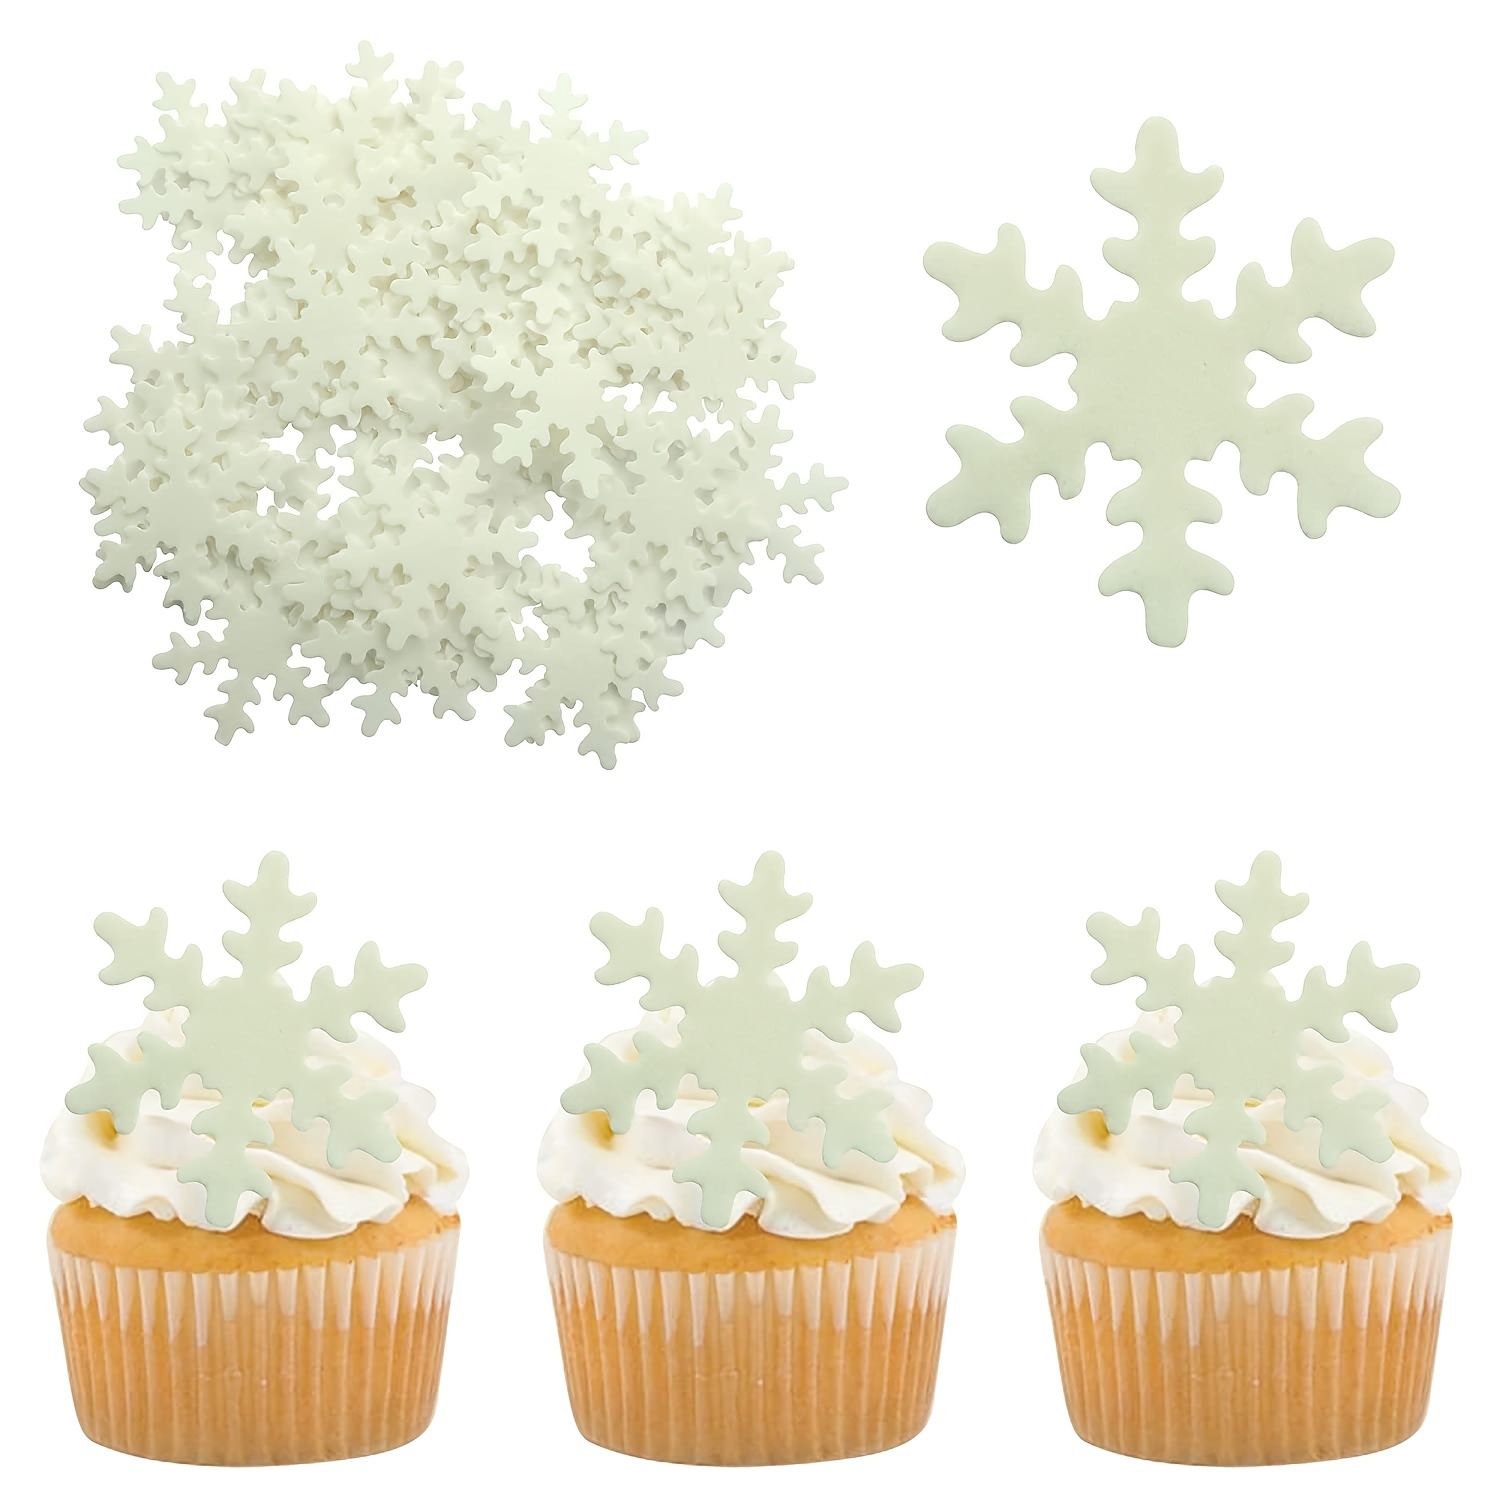 Morofme Edible Snowflake Cake Topper, 50pcs Edible Frozen Cake Decorations, Winter Cupcake Topper, White Edible Snowflake Cupcake Toppers for